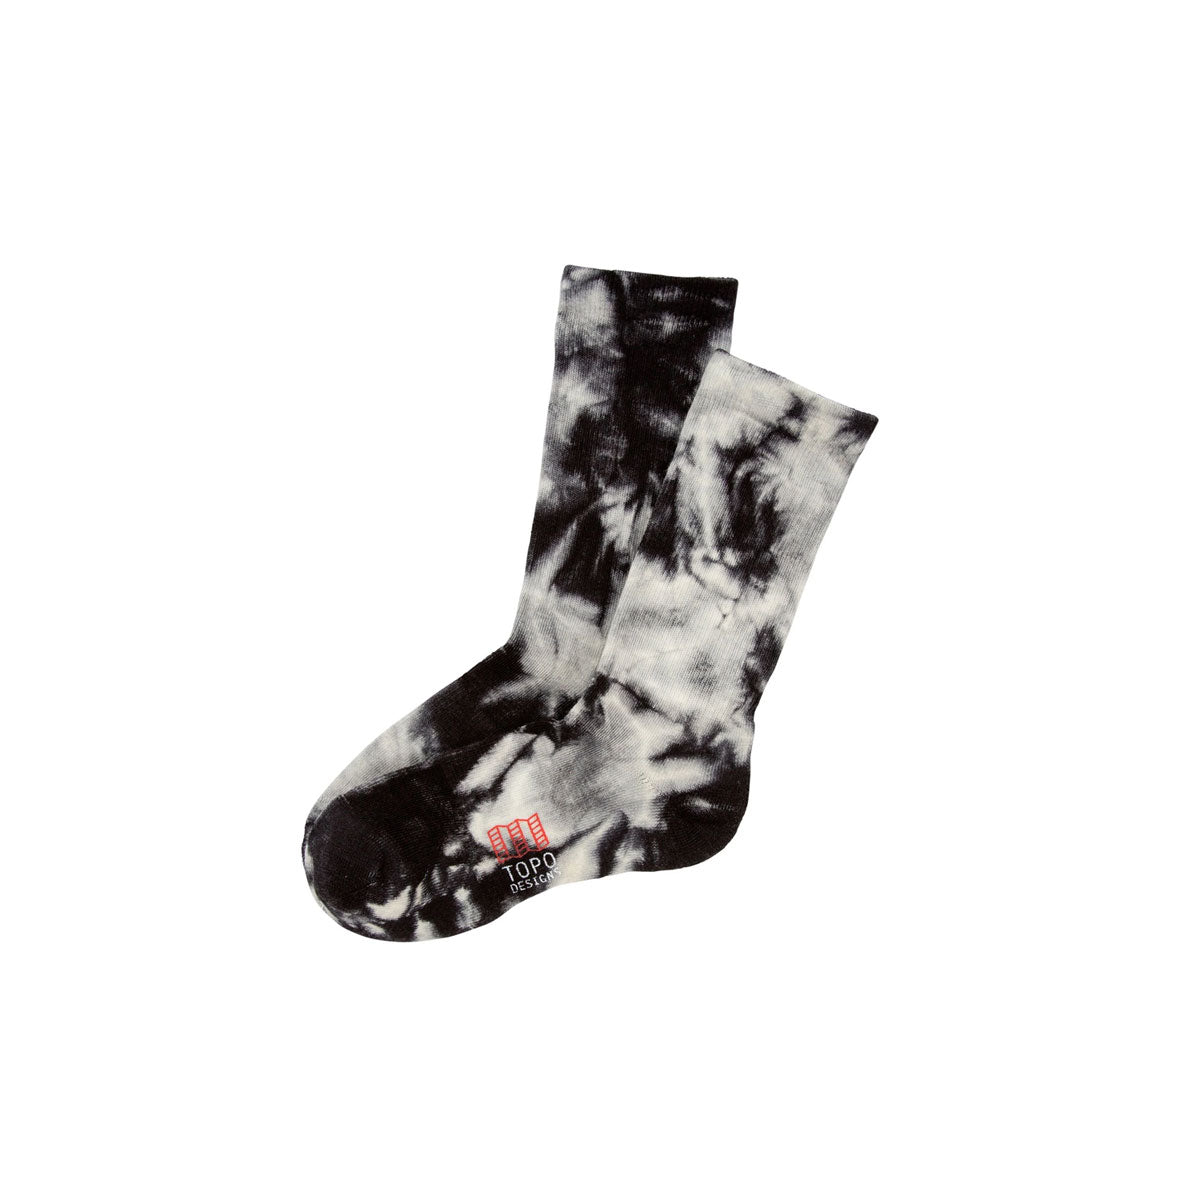 Topo Designs : Town Socks : Black/White Tie Dye